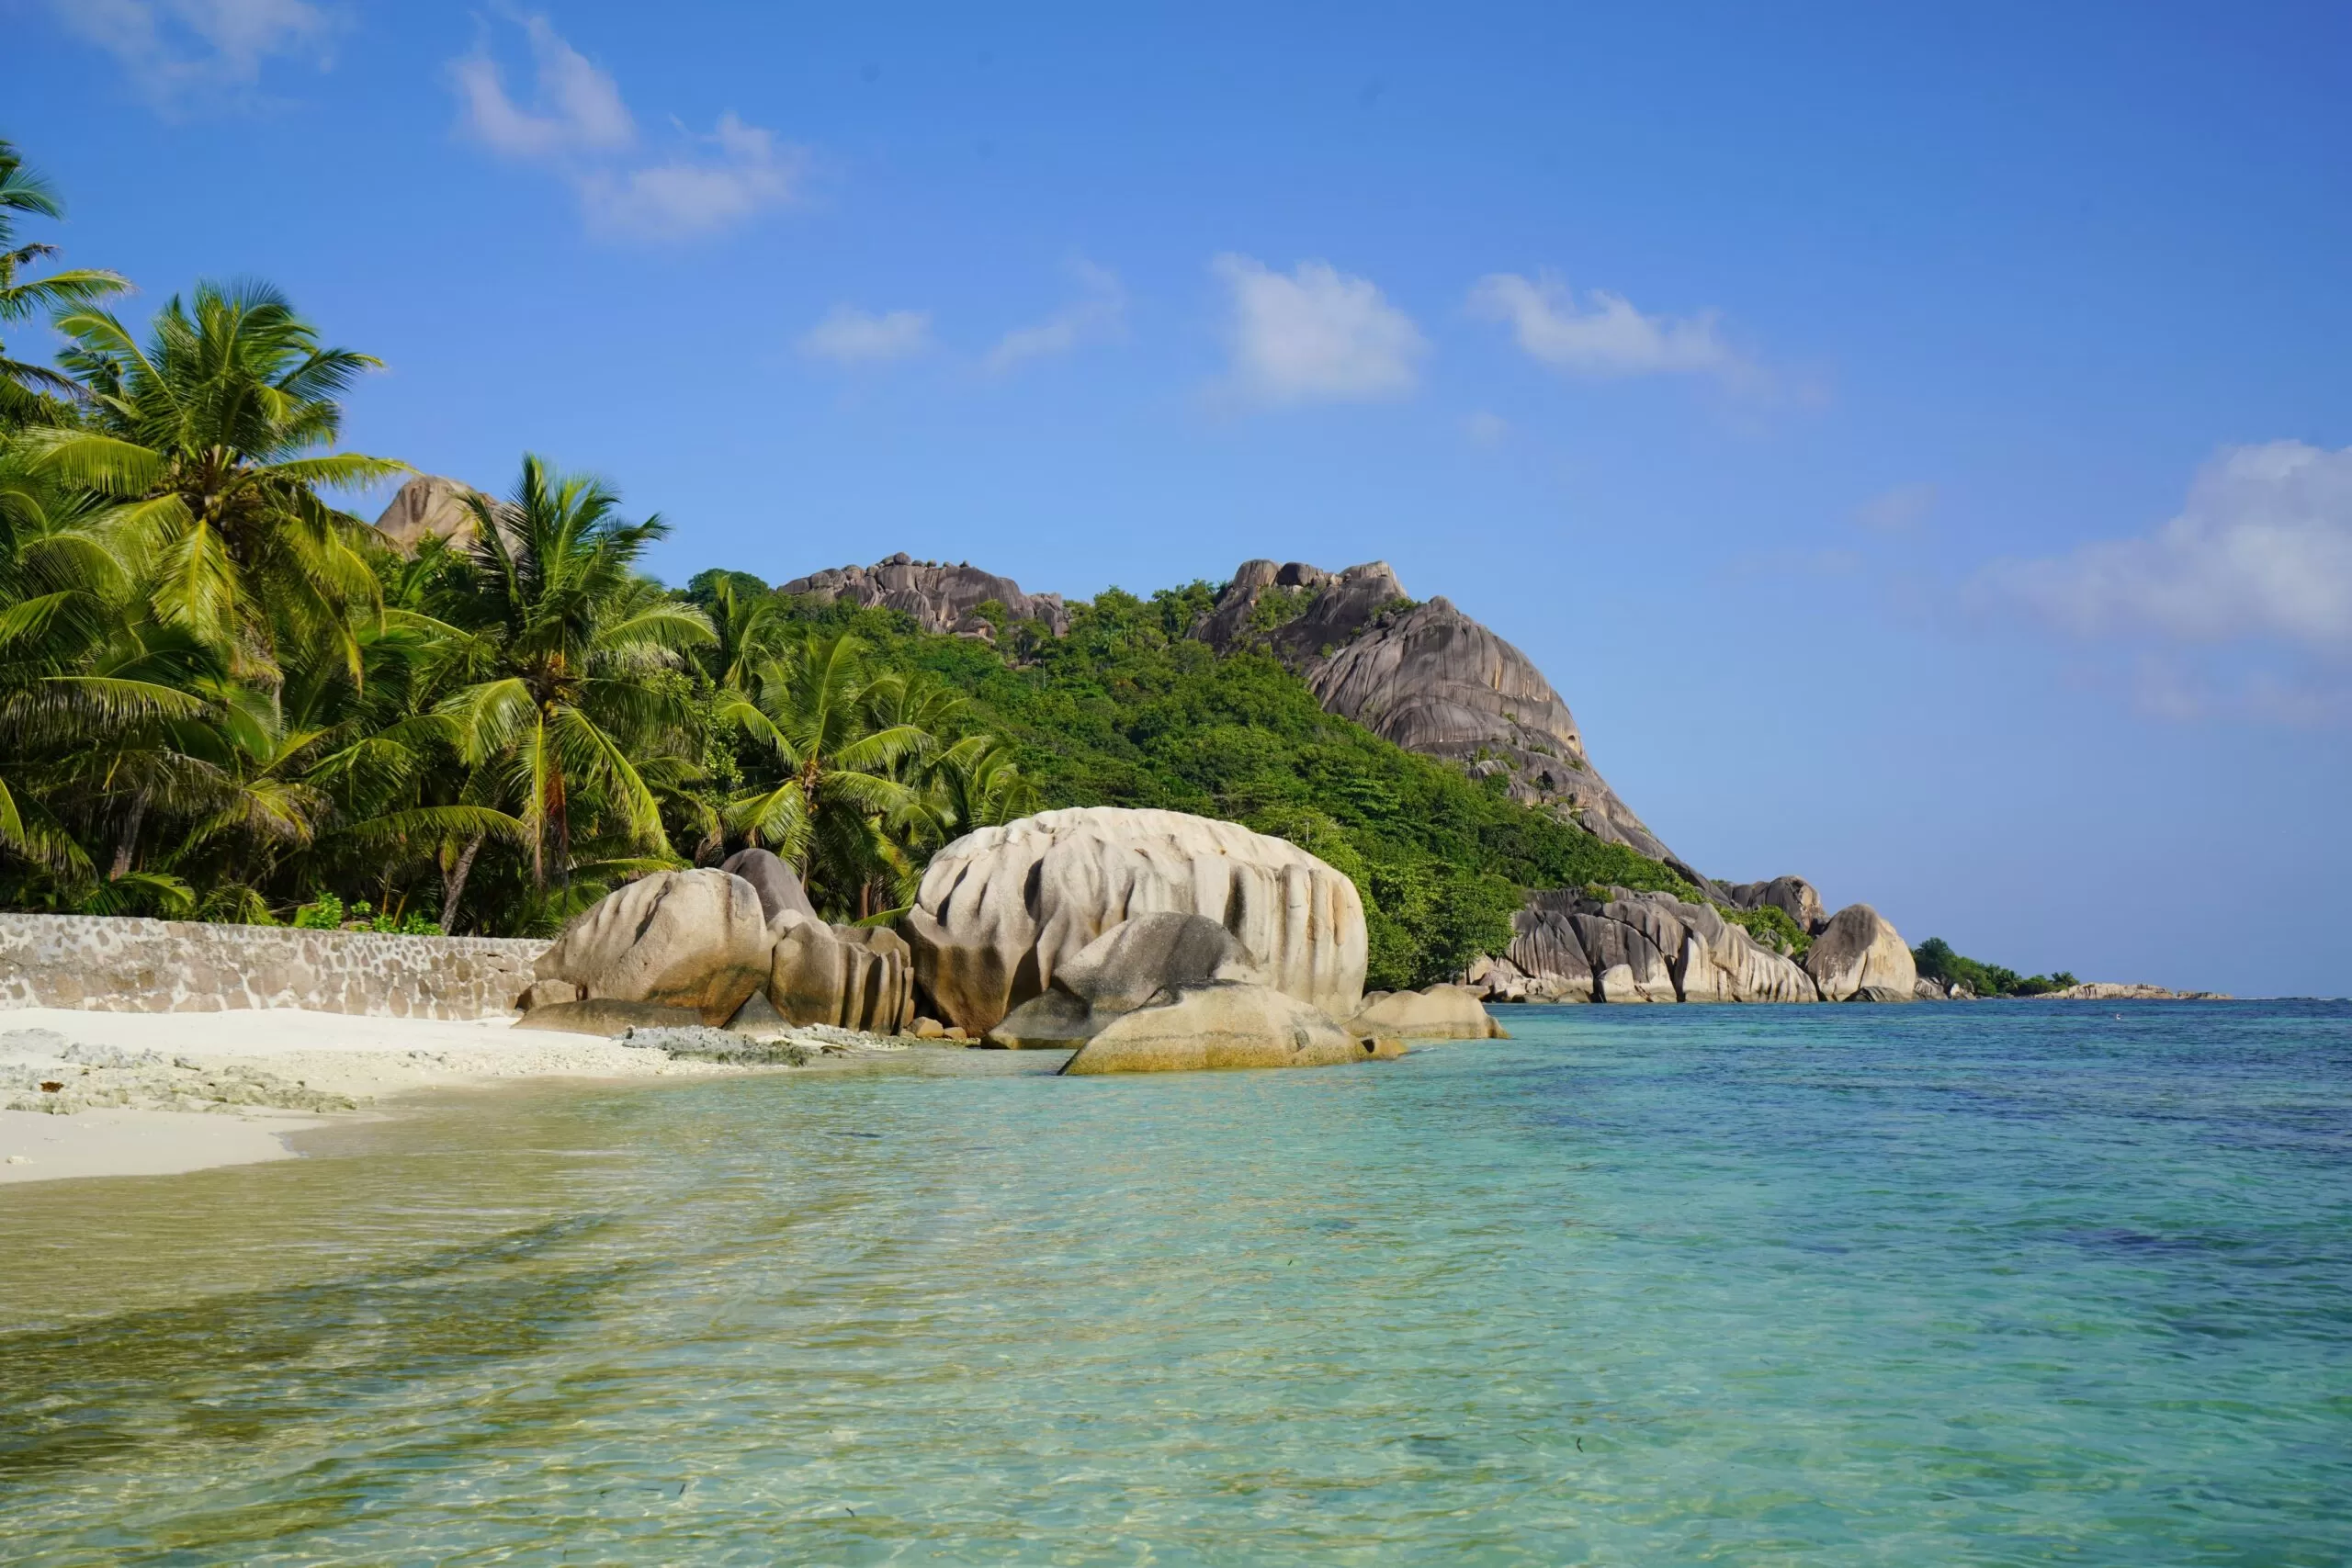 Astounding landscape and seascape of La Digue, Seychelles